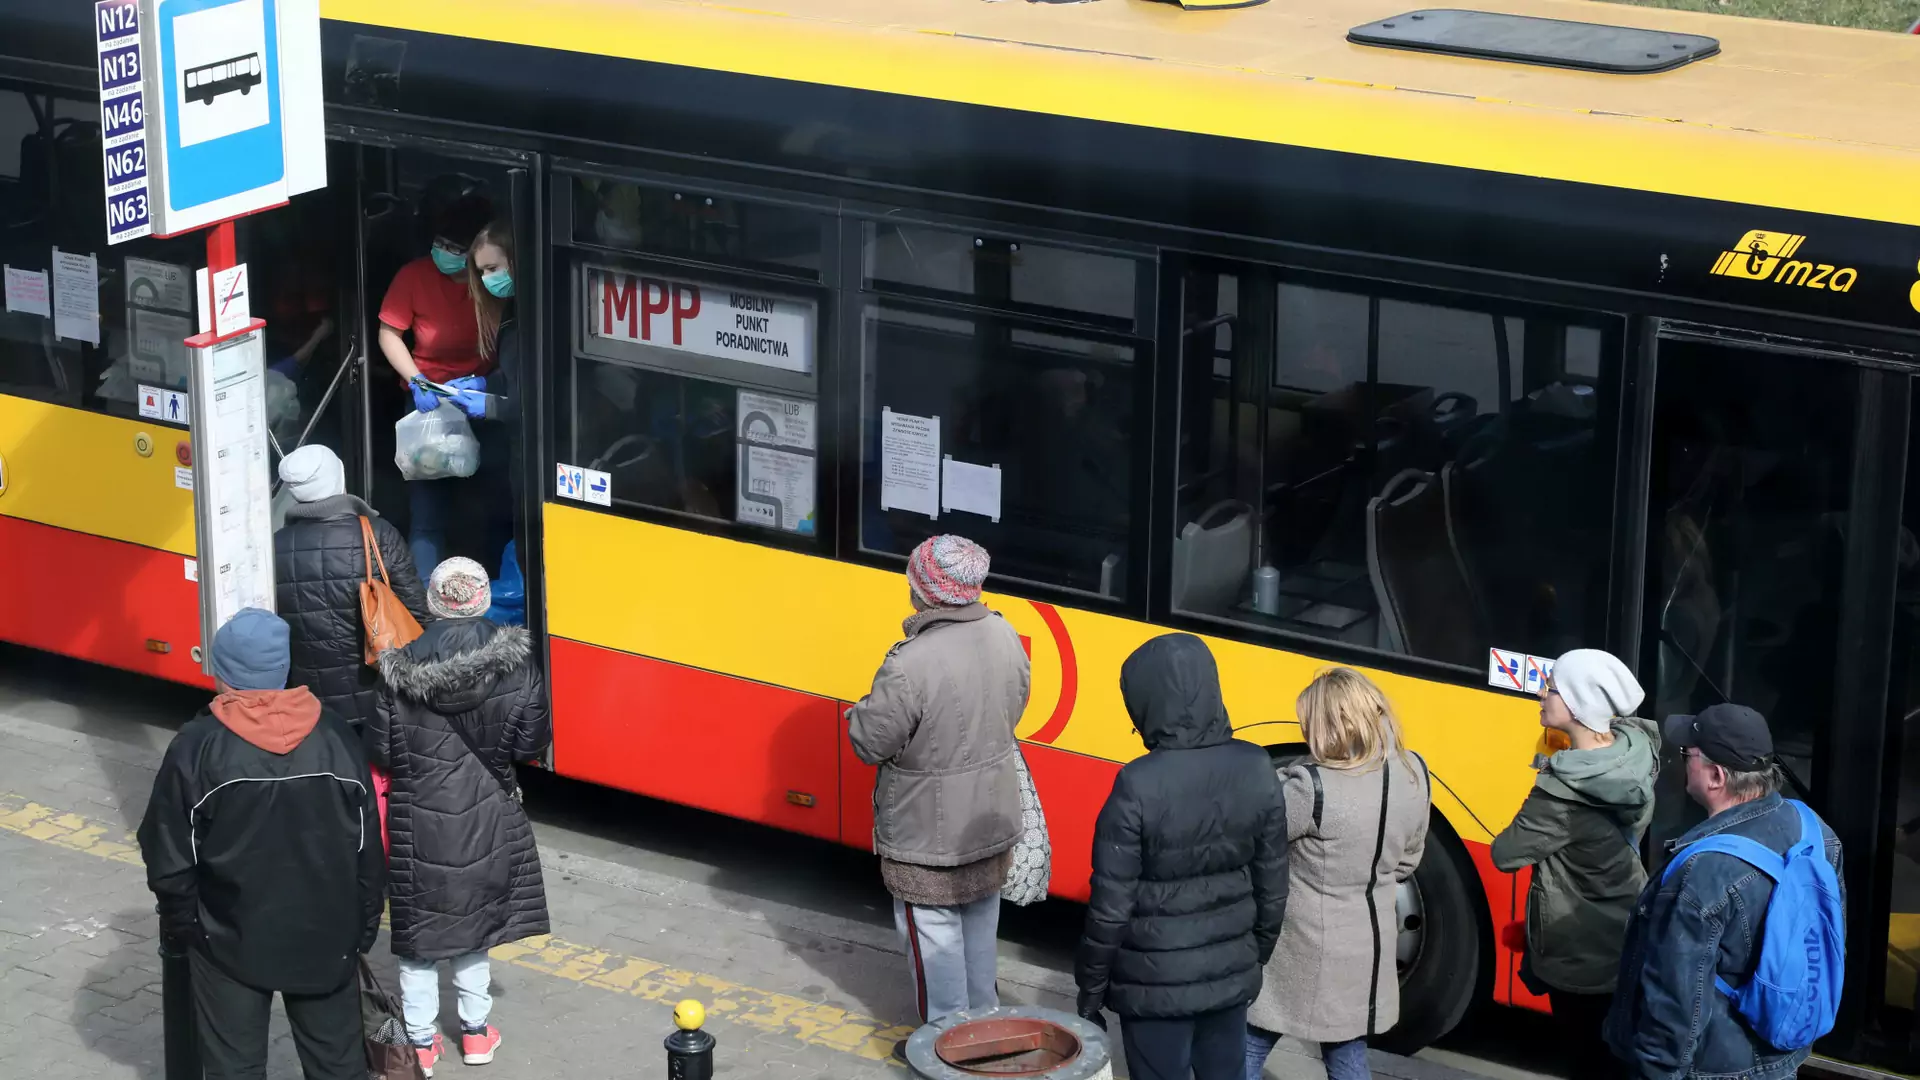 Specjalna linia autobusowa w Warszawie. Można się ogrzać i znaleźć fachową pomoc